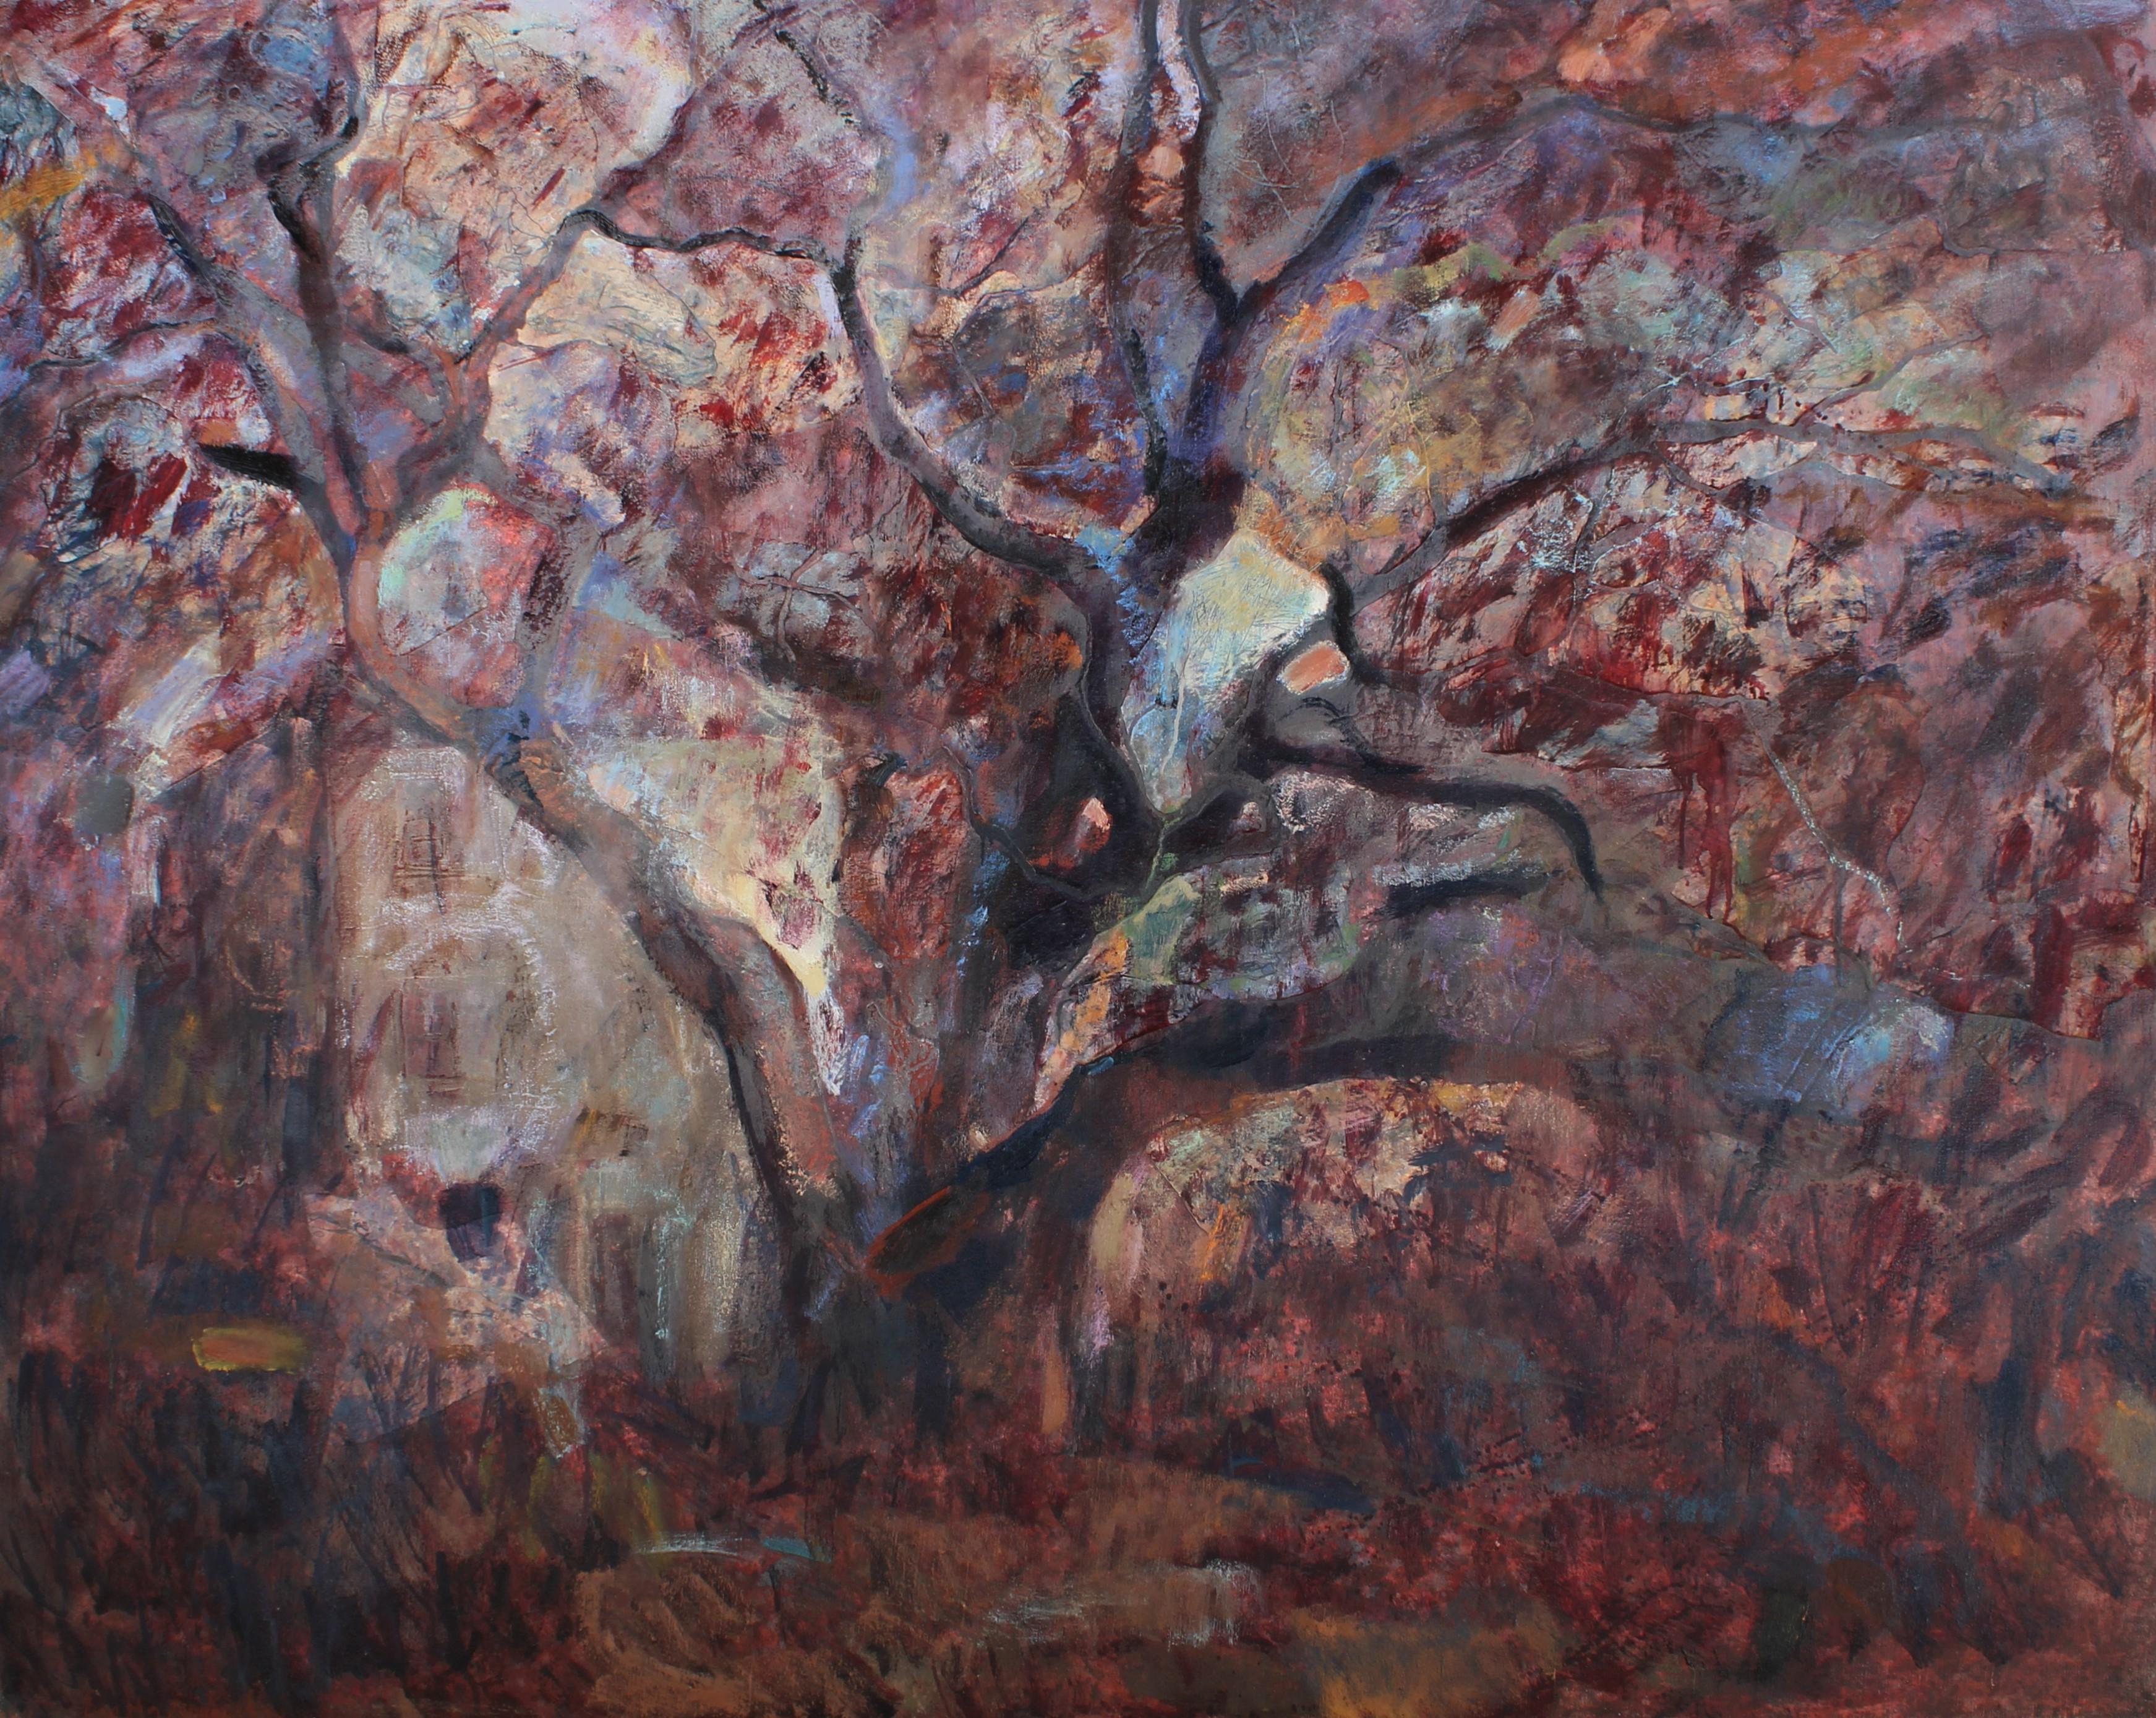 Landscape Painting Elena Georgieva - Noyer à Rusalsko. Peinture à l'huile sur toile de paysage rouge, vert, bleu, rouge et jaune